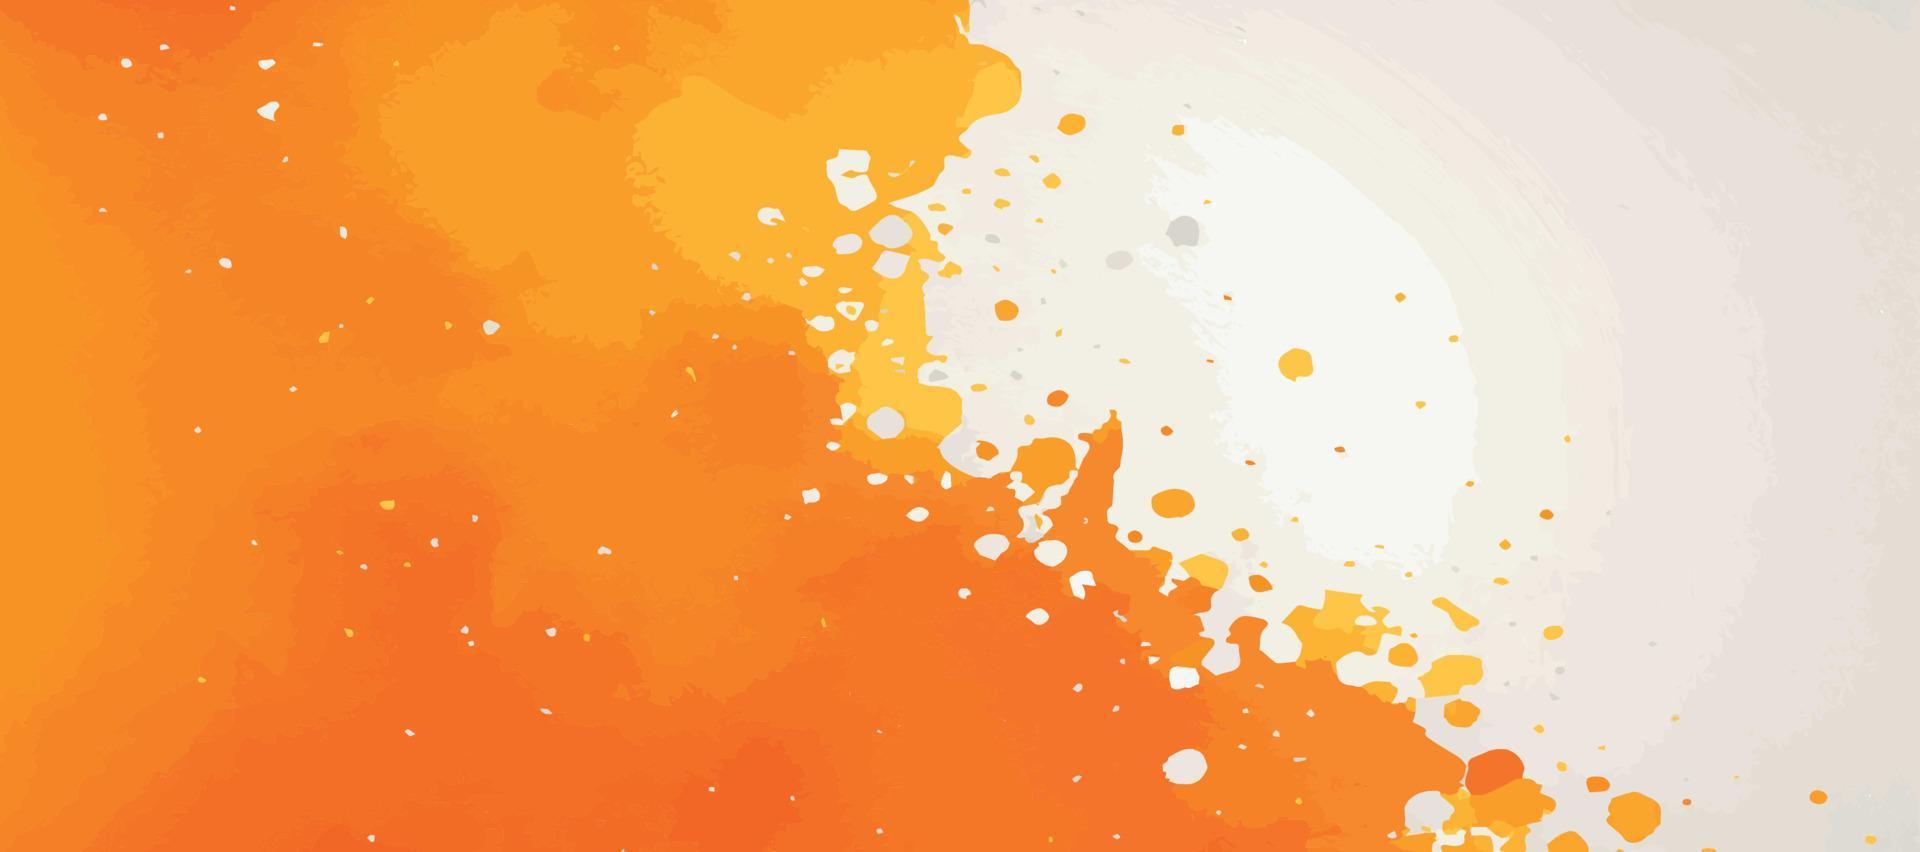 textura panorámica realista de acuarela amarillo-naranja sobre un fondo blanco - ilustración vectorial vector